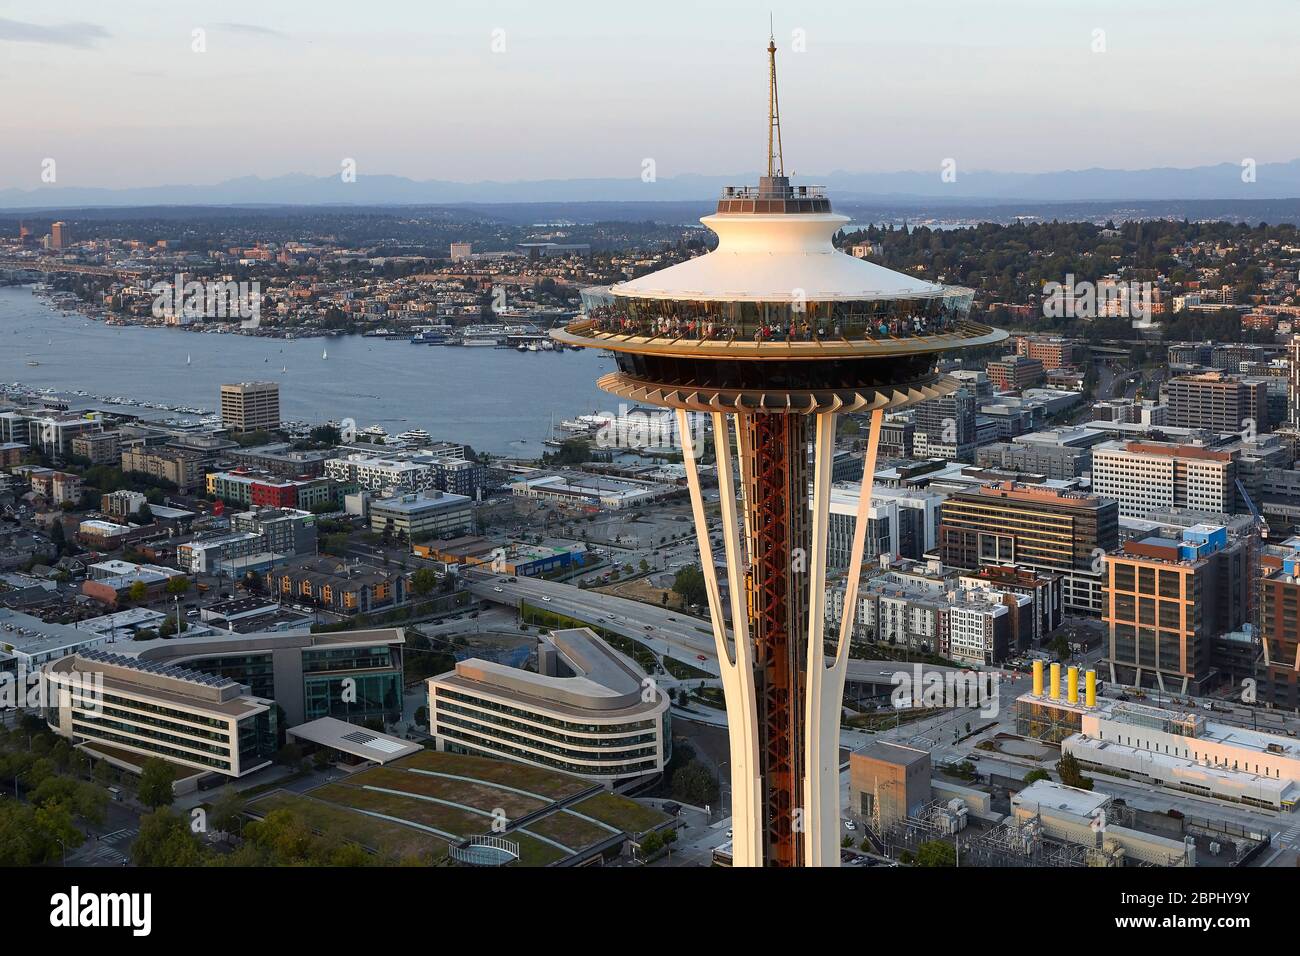 Untertasse geformt Top Haus aus der Luft. Space Needle, Seattle, Usa.  Architekt: Olson Kständig, 2020 Stockfotografie - Alamy